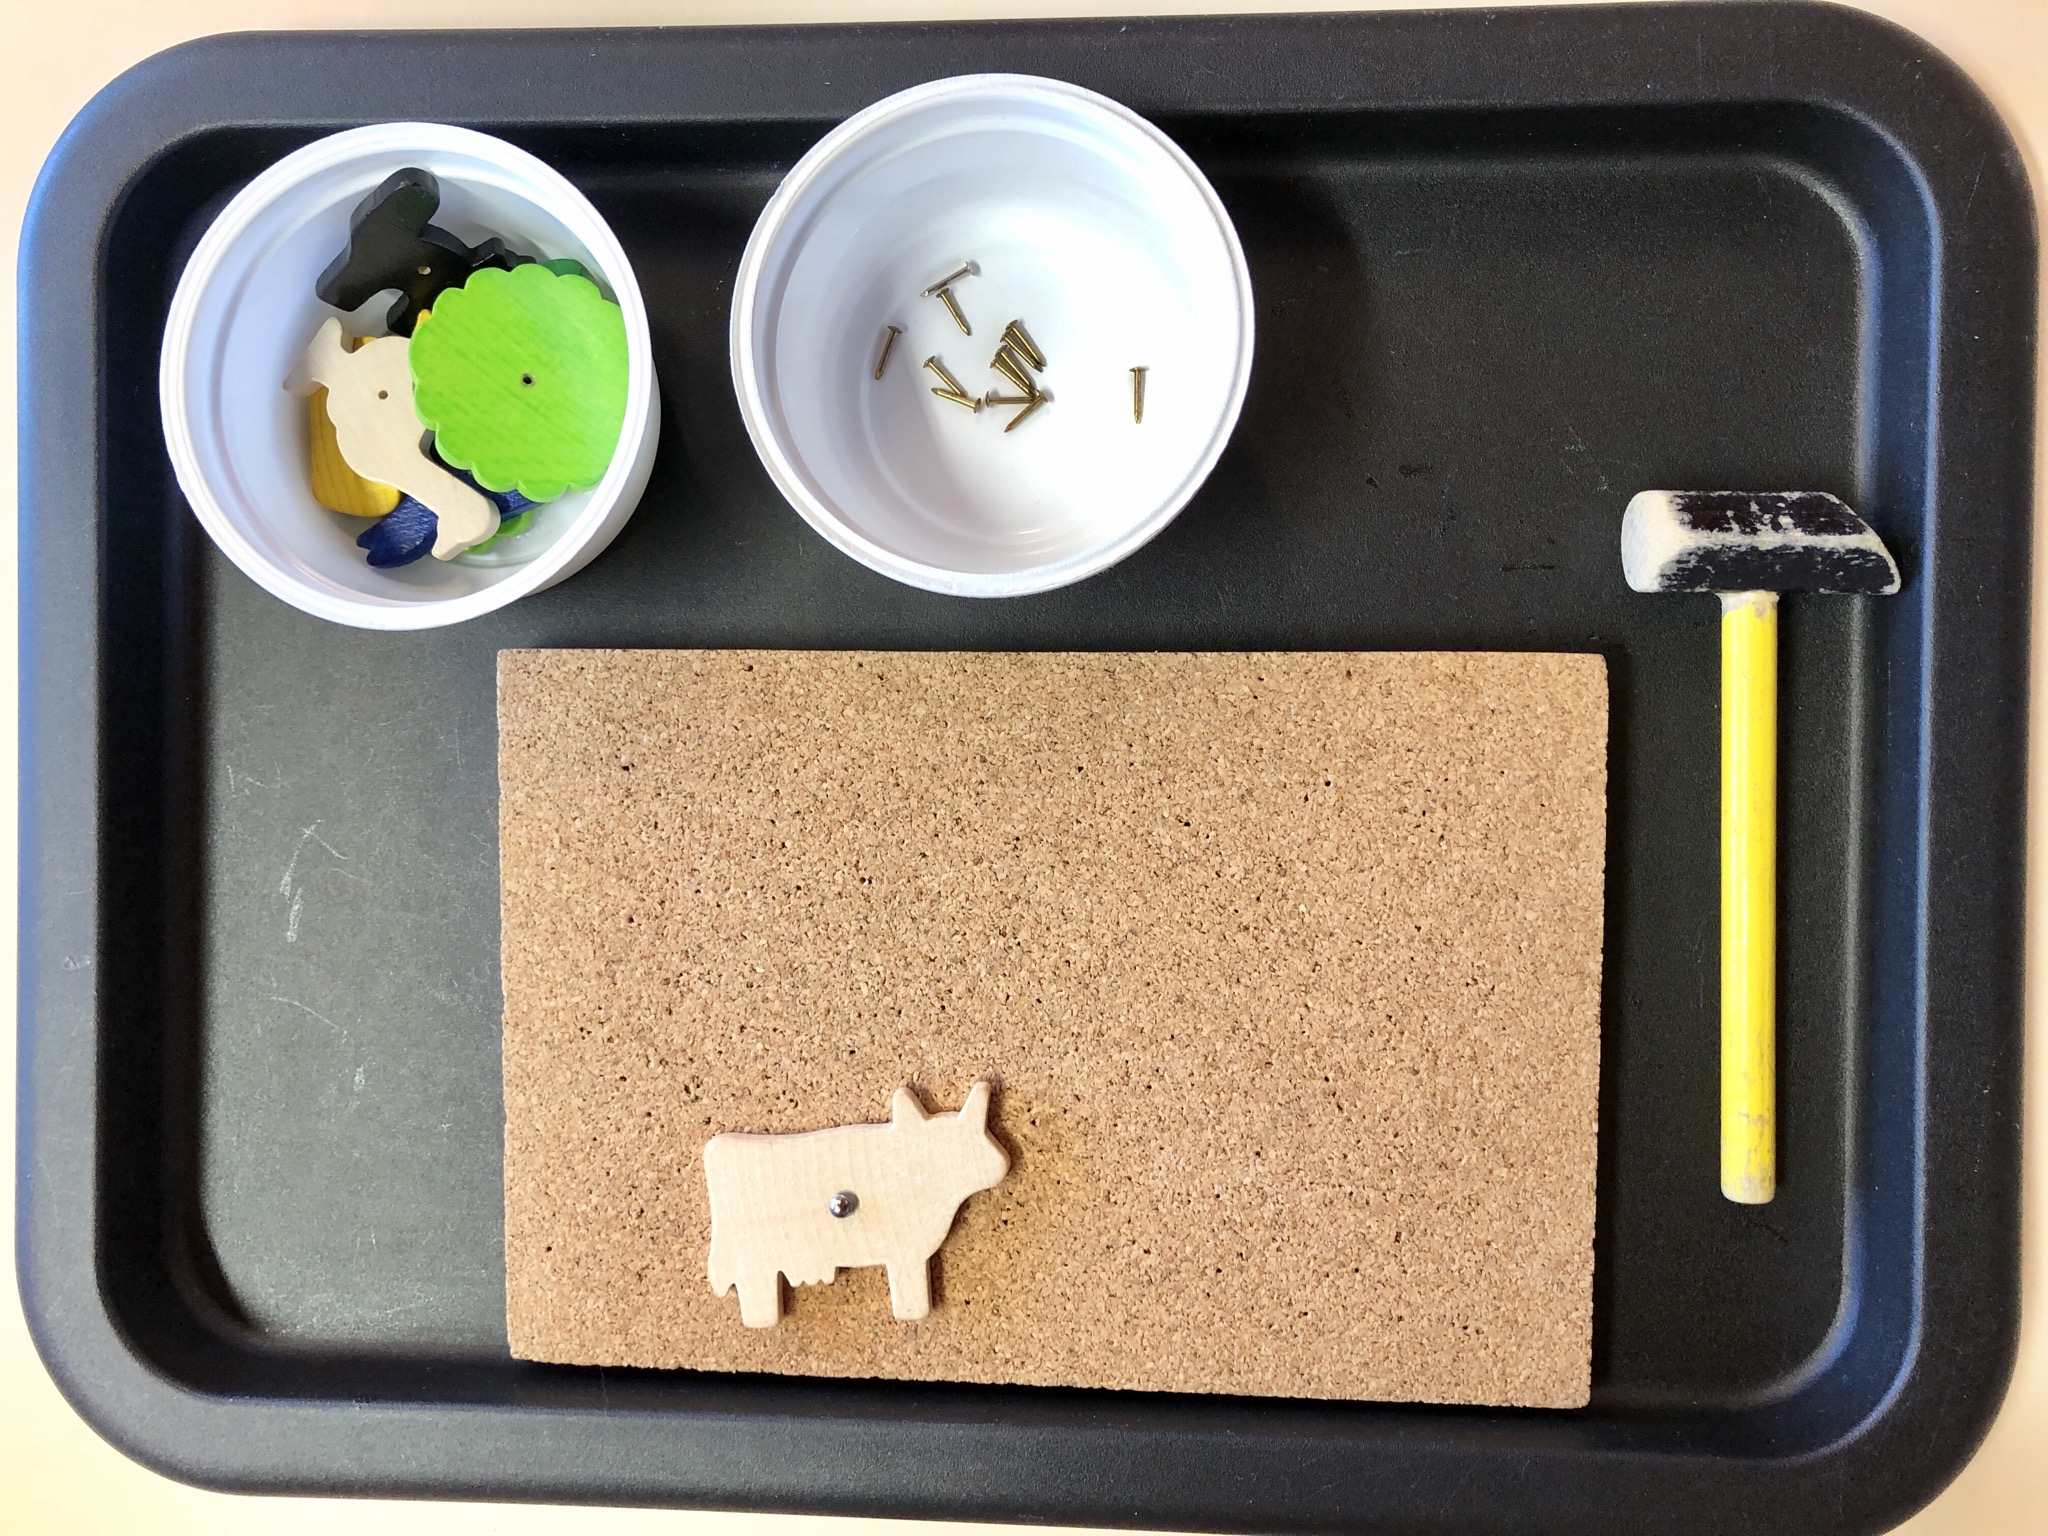 Bild zum Schritt 2 für das Bastel- und DIY-Abenteuer für Kinder: 'Tablett mit Korkplatte, Hammer und Schälchen mit Holzfiguren und Nägeln...'